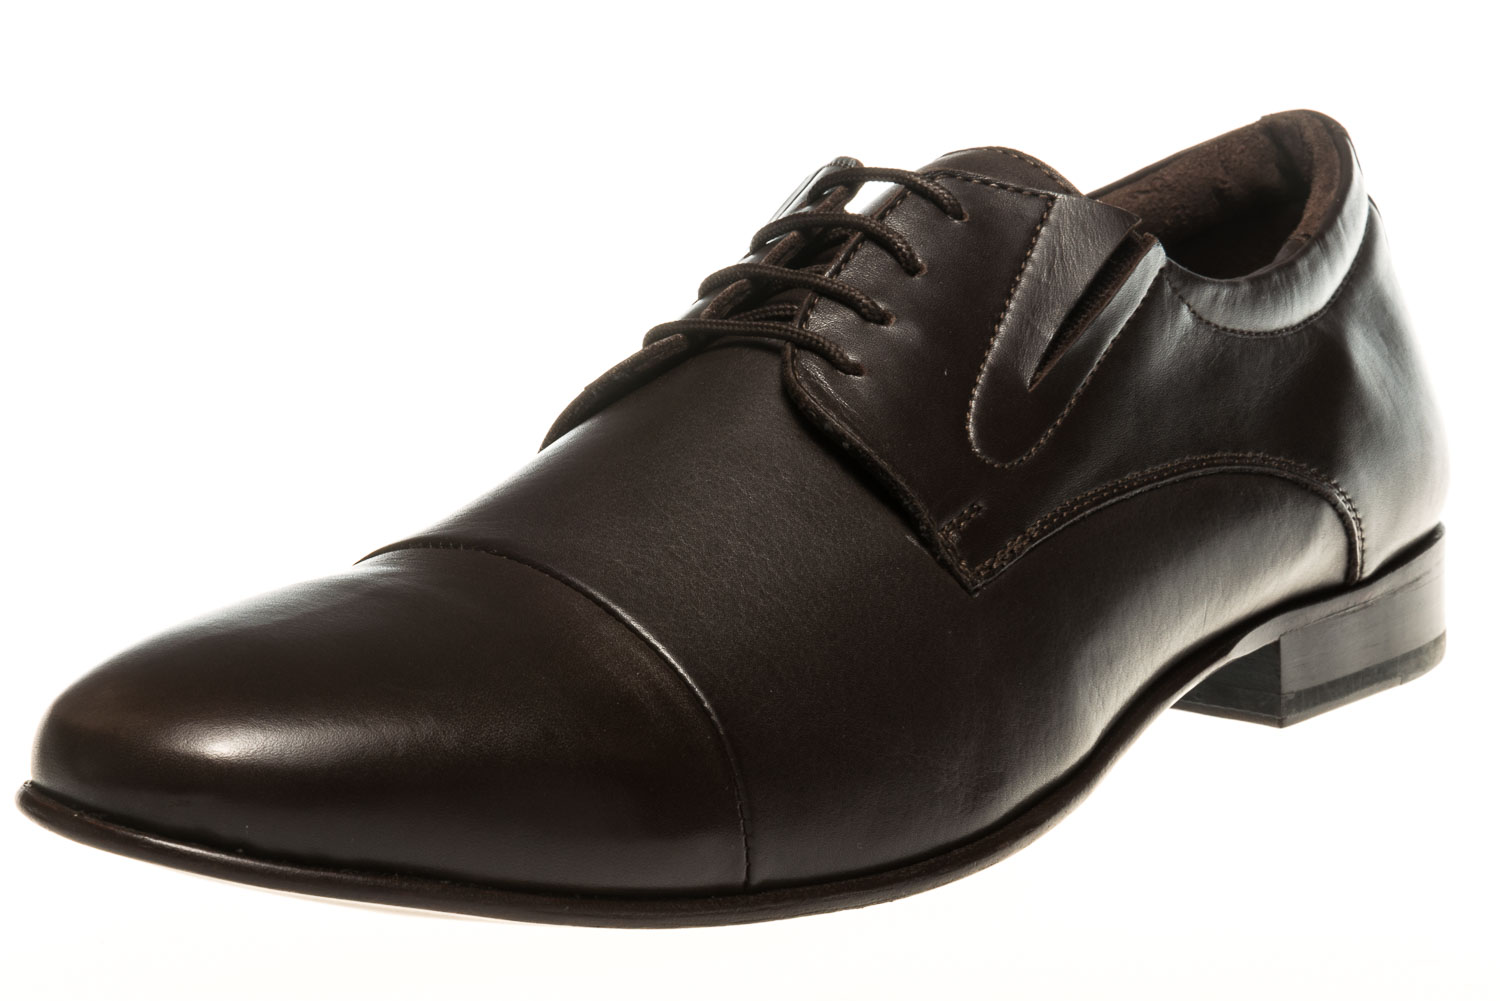 MANZ Business Schuhe in Übergrößen Braun 120051-22-187 große Herrenschuhe